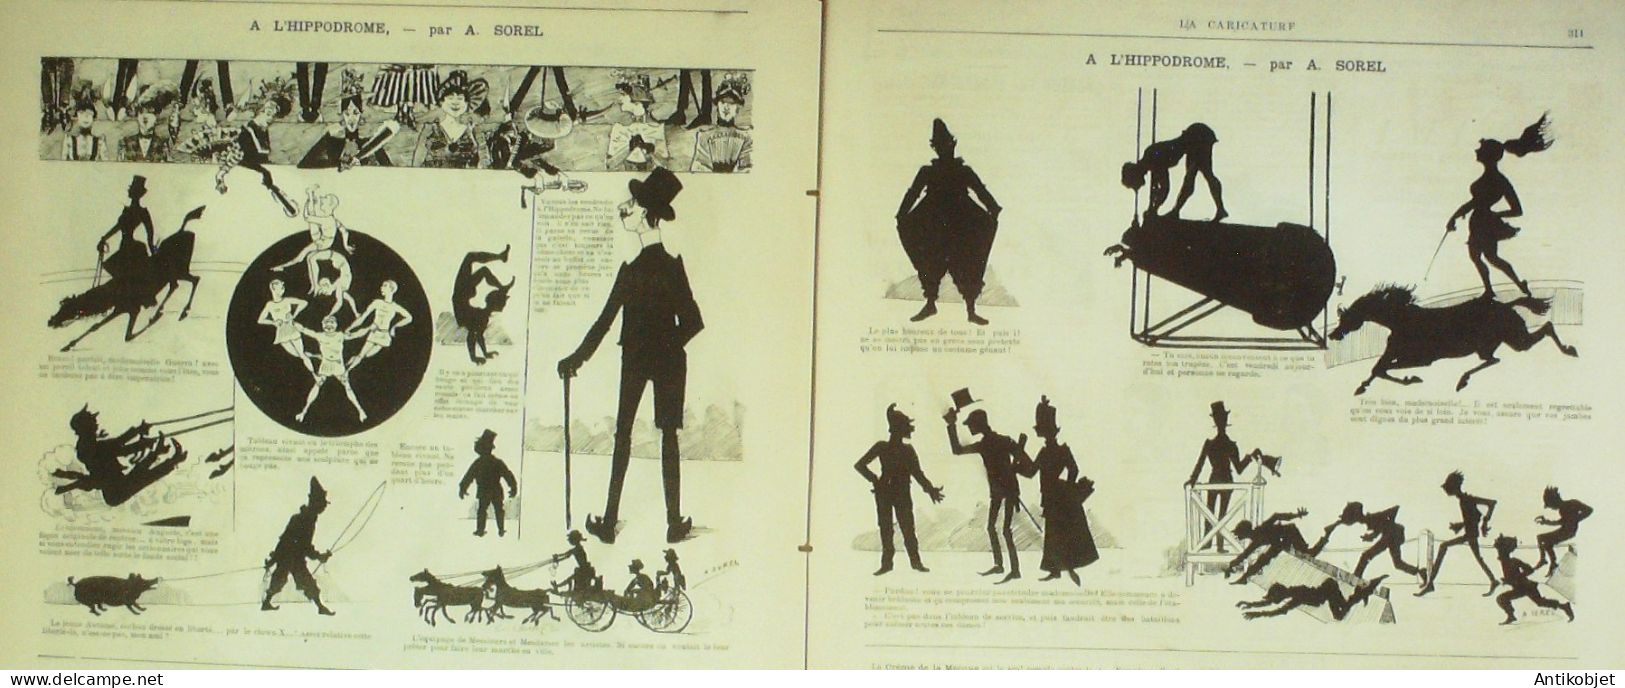 La Caricature 1884 N°247 Le Long Des Plages Robida Chine Sorel Courbet Par Luque Job - Revistas - Antes 1900